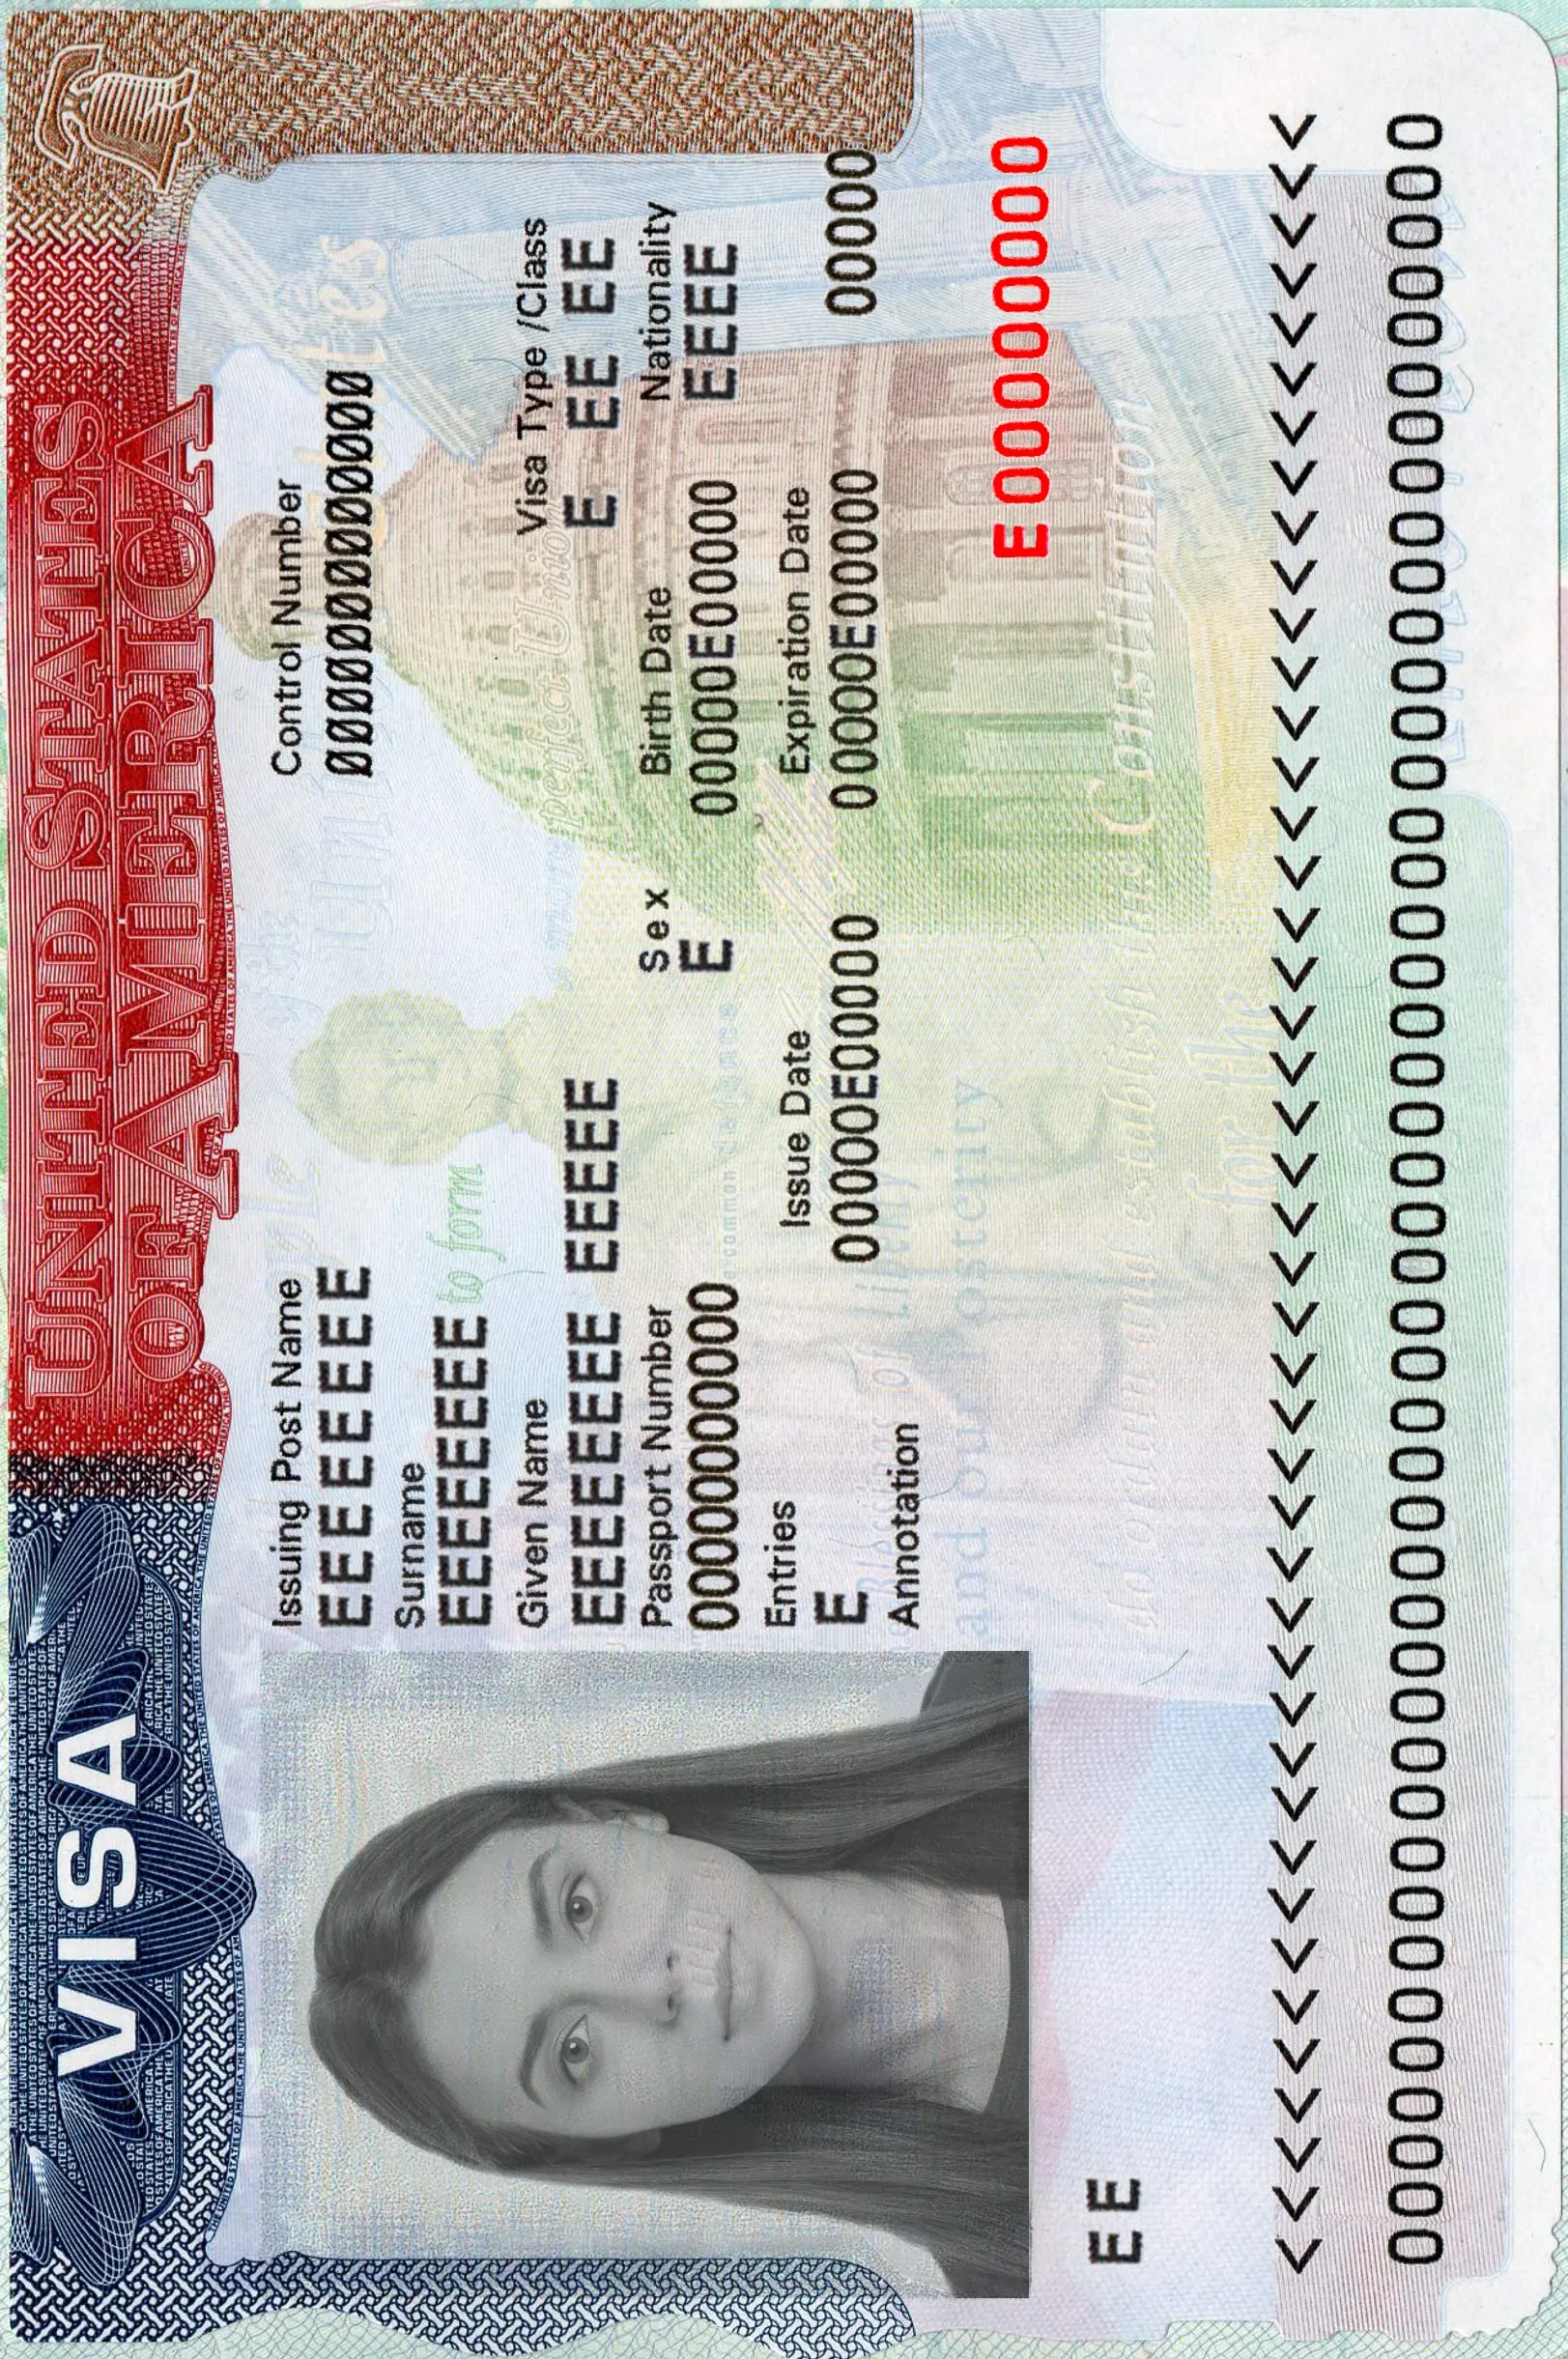 Foto para la visa para Estados Unidos 2x2 pulgadas (51x51 mm)